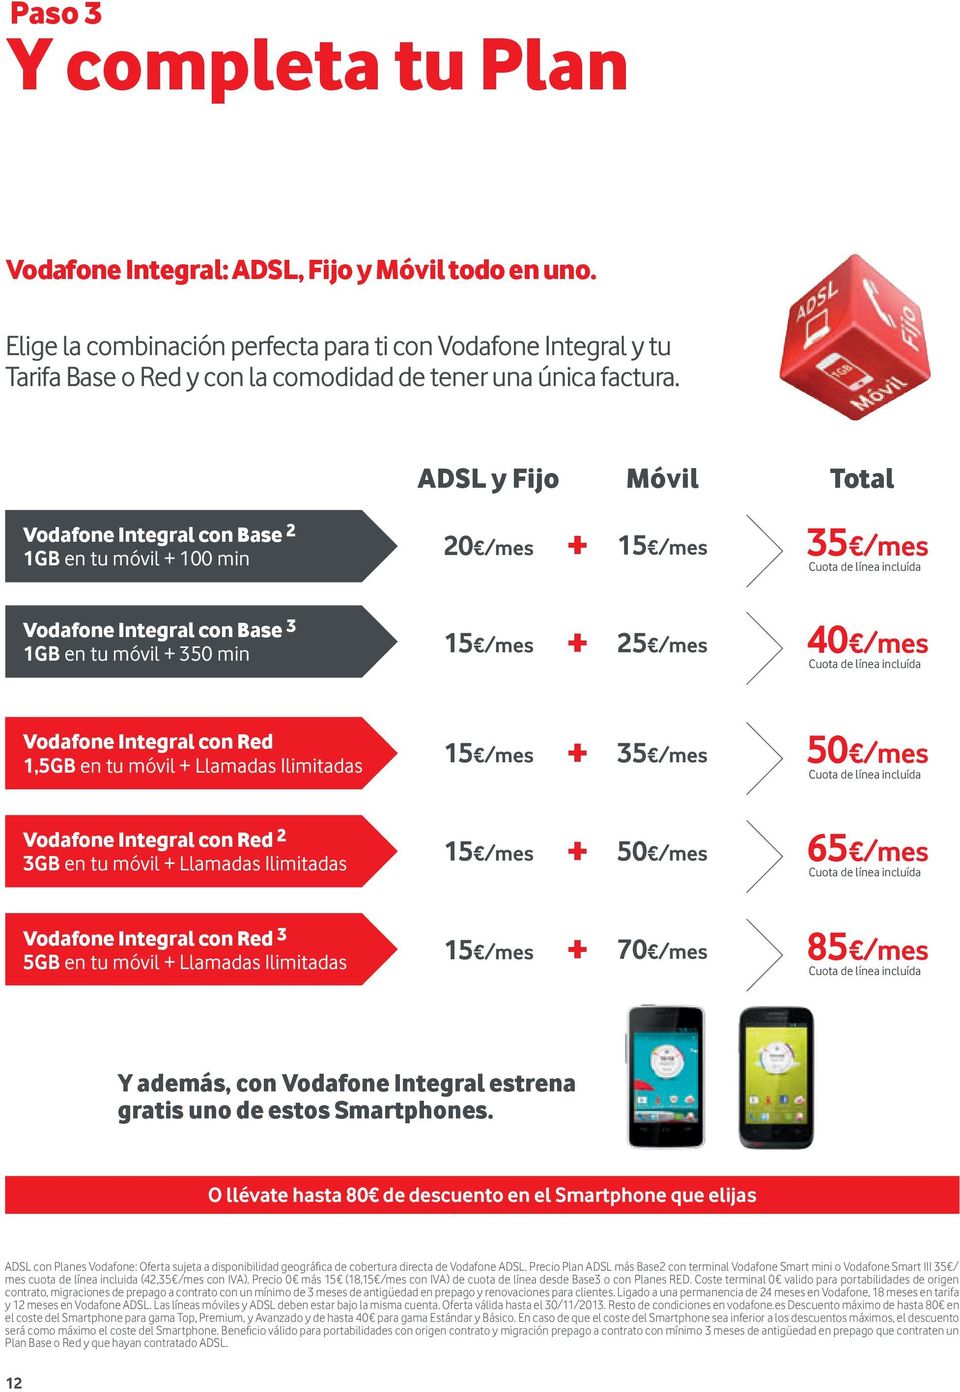 de línea incluída Integral con Red 1,5GB en tu móvil + Llamadas Ilimitadas 15 /mes + 35 /mes 50 /mes Cuota de línea incluída Integral con Red 2 3GB en tu móvil + Llamadas Ilimitadas 15 /mes + 50 /mes